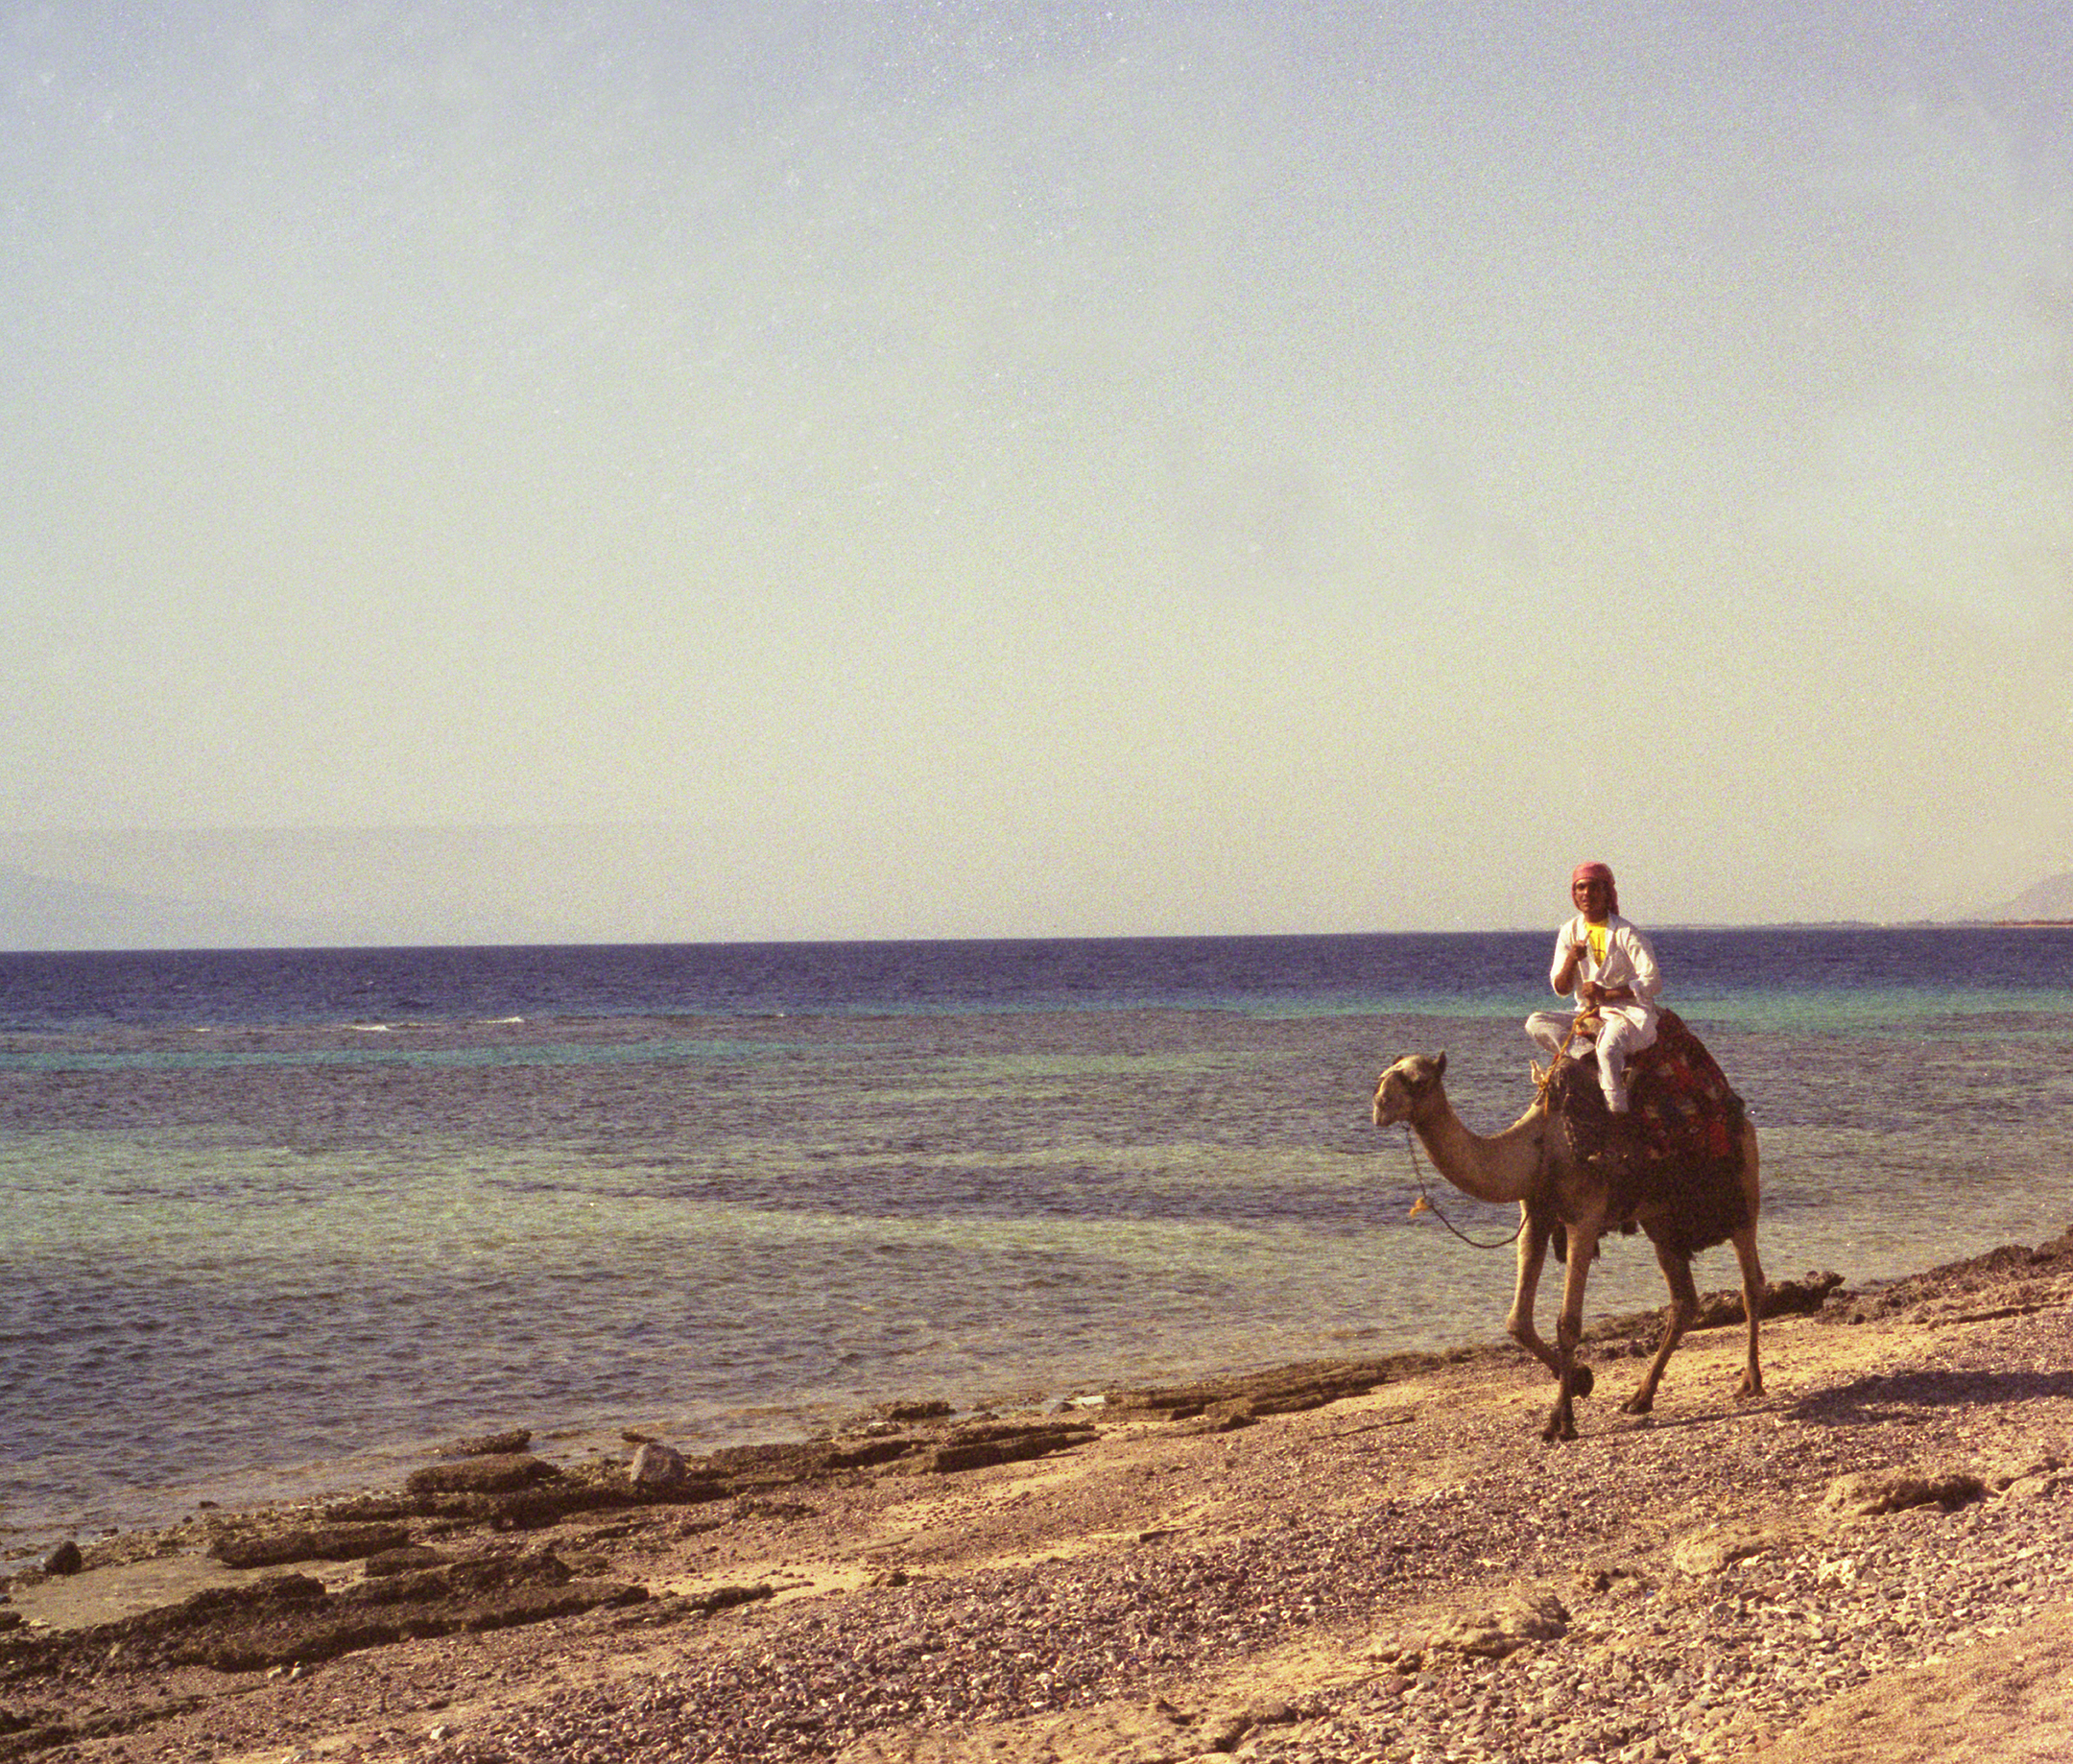 A Bedouin Riding His Camel, Sinai, Egypt